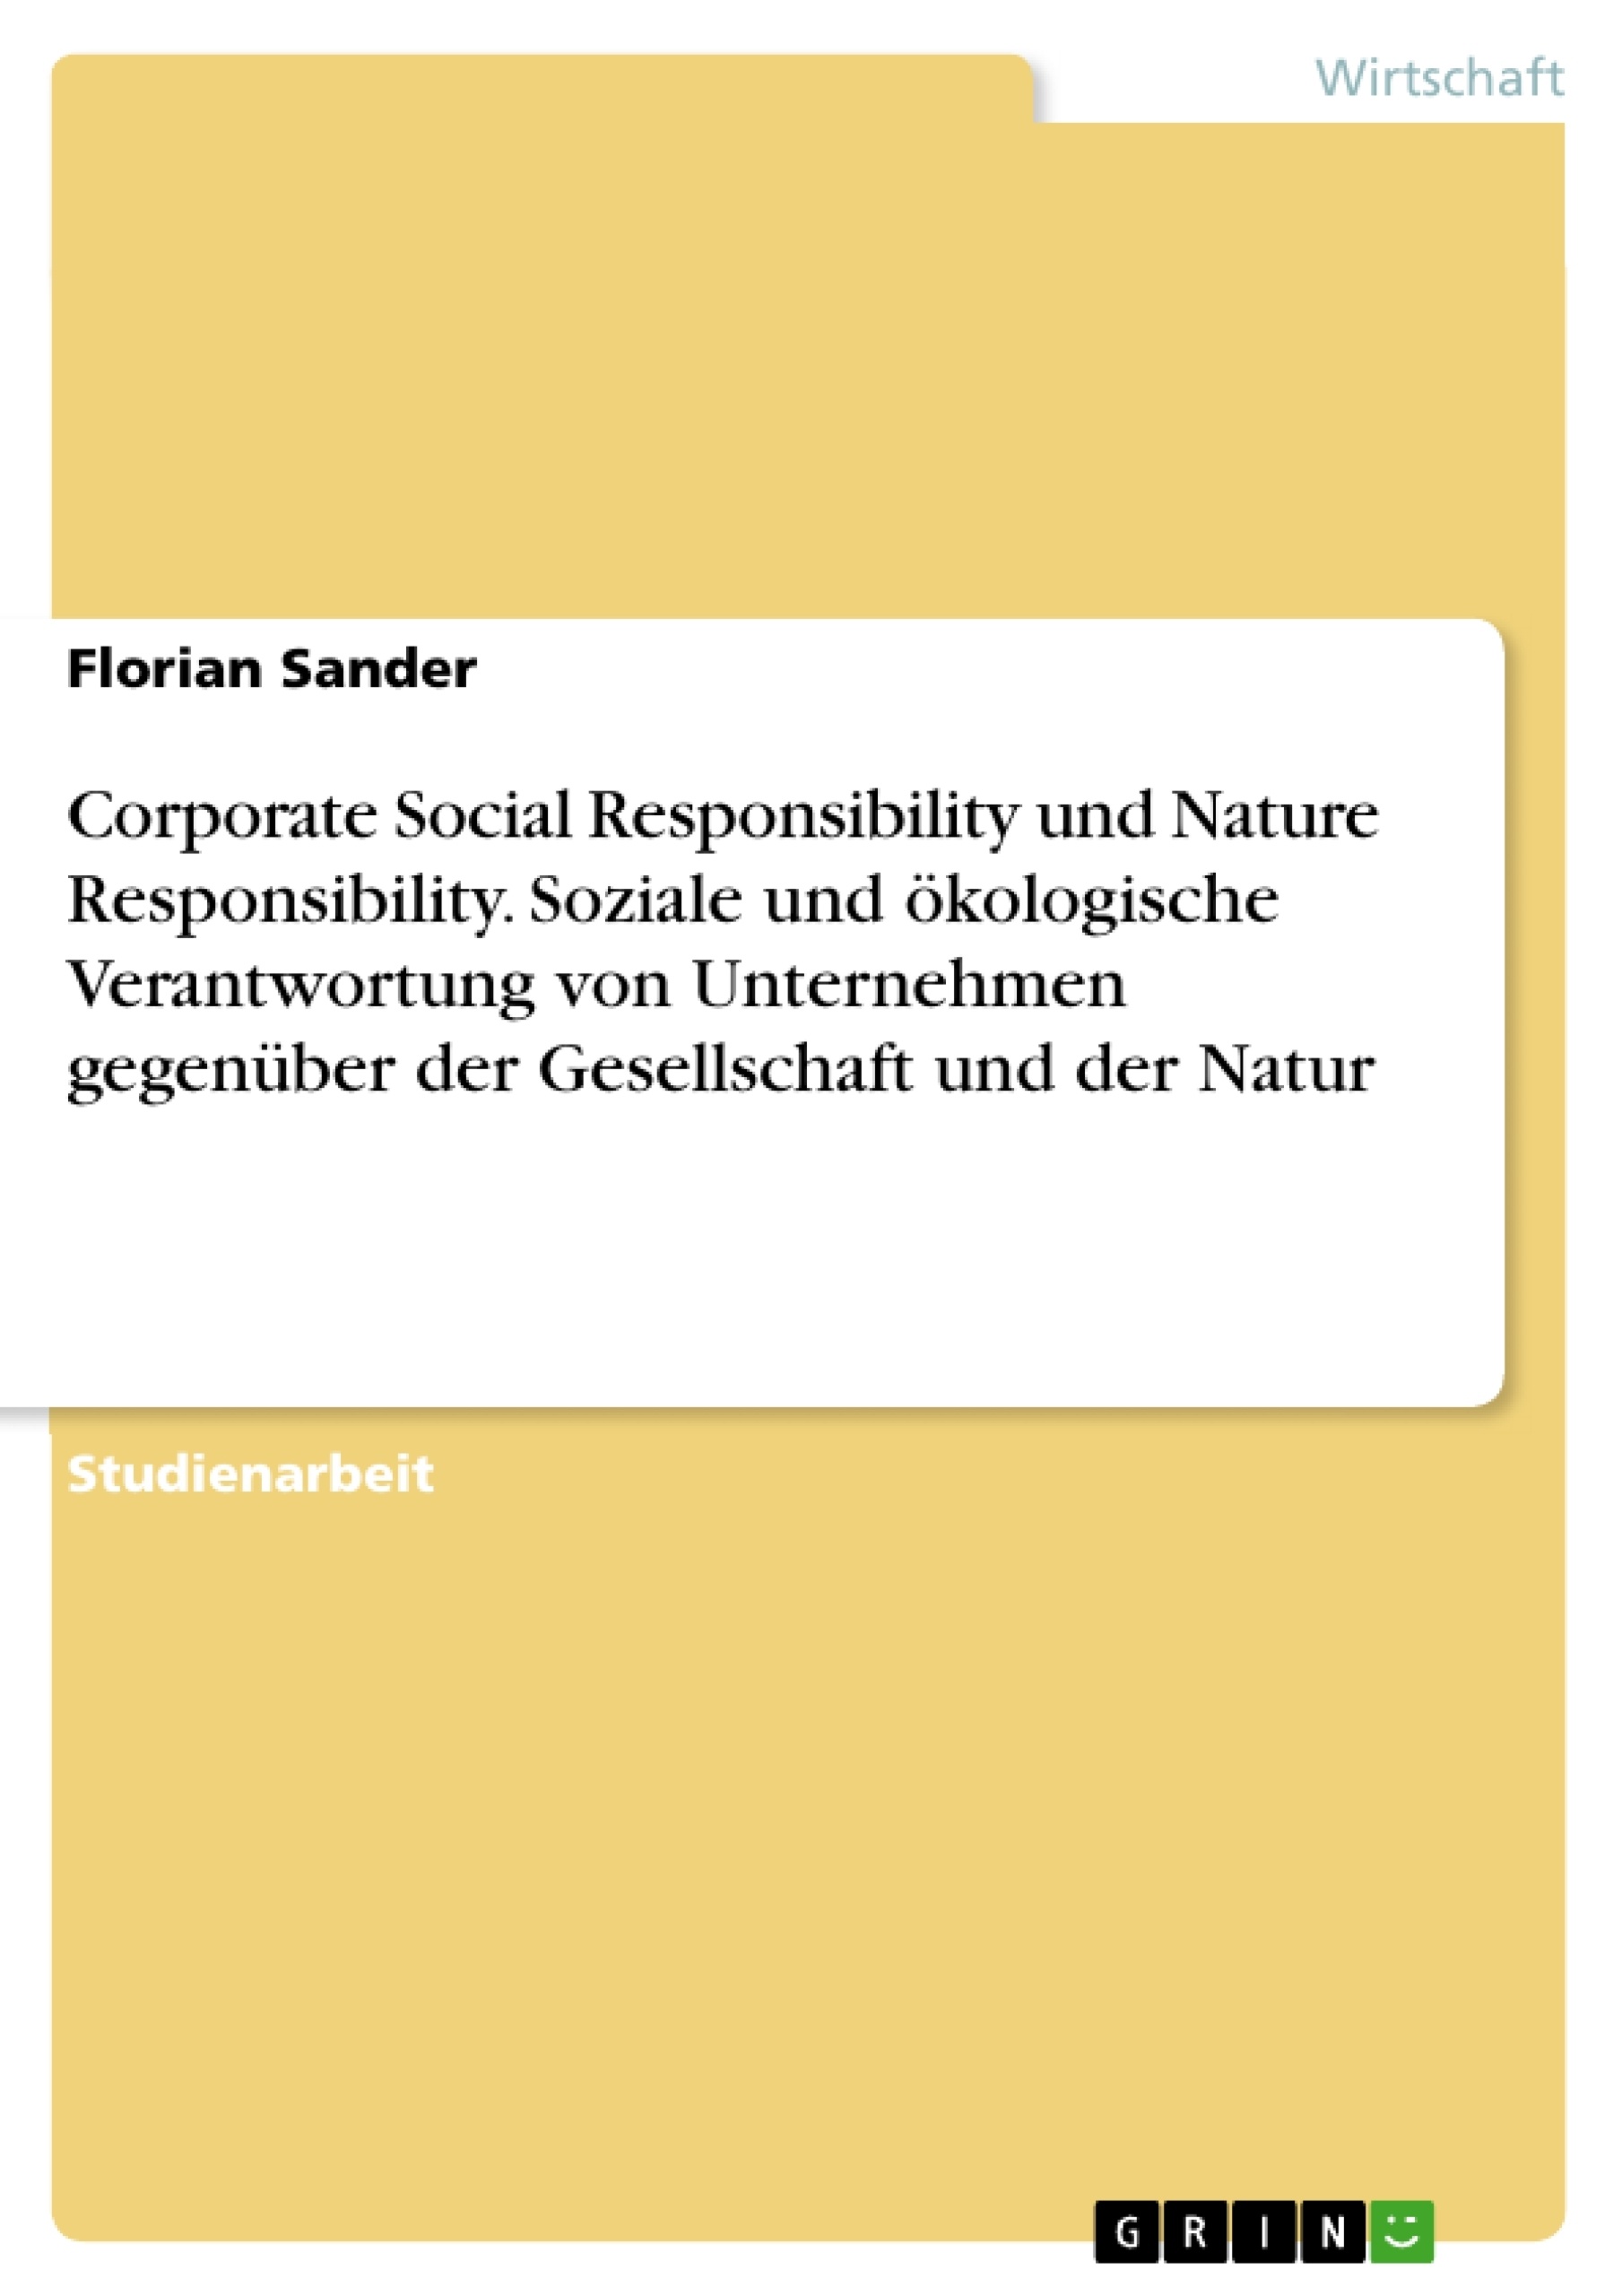 Titel: Corporate Social Responsibility und Nature Responsibility. Soziale und ökologische Verantwortung von Unternehmen gegenüber der Gesellschaft und der Natur